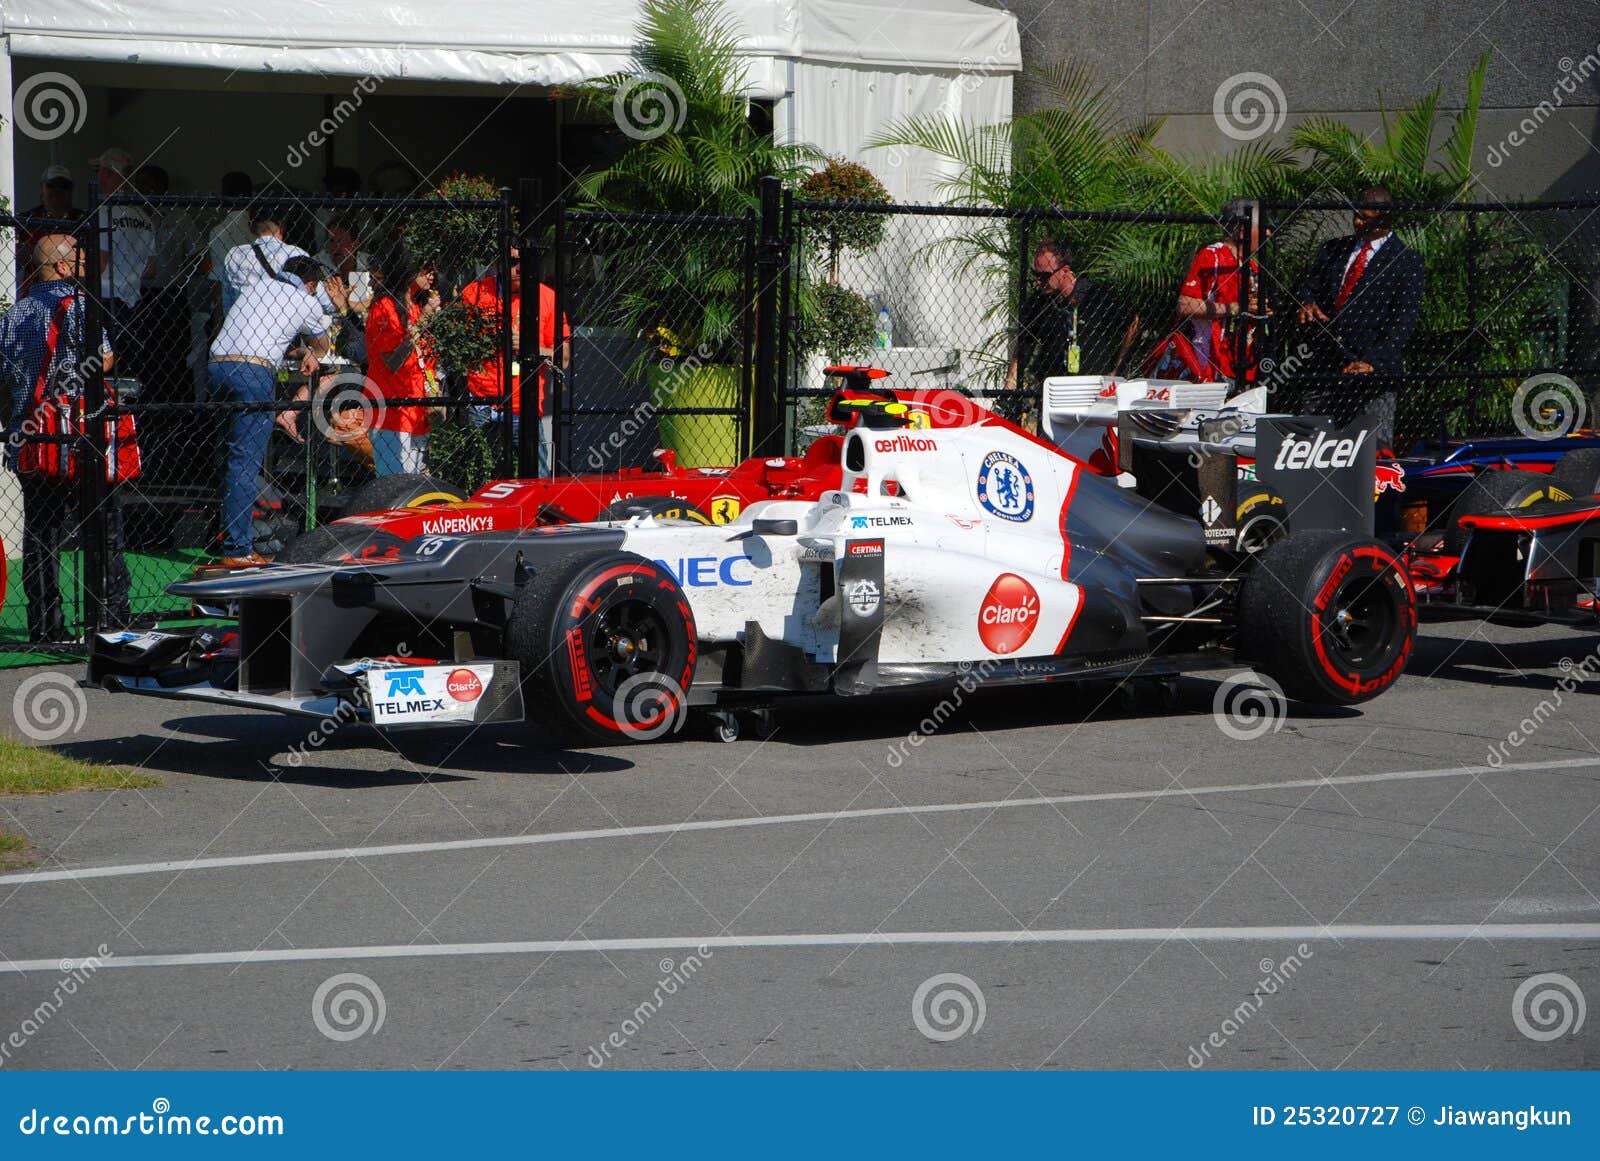 F1 Sauber C14A-01 - Carros de corrida a venda